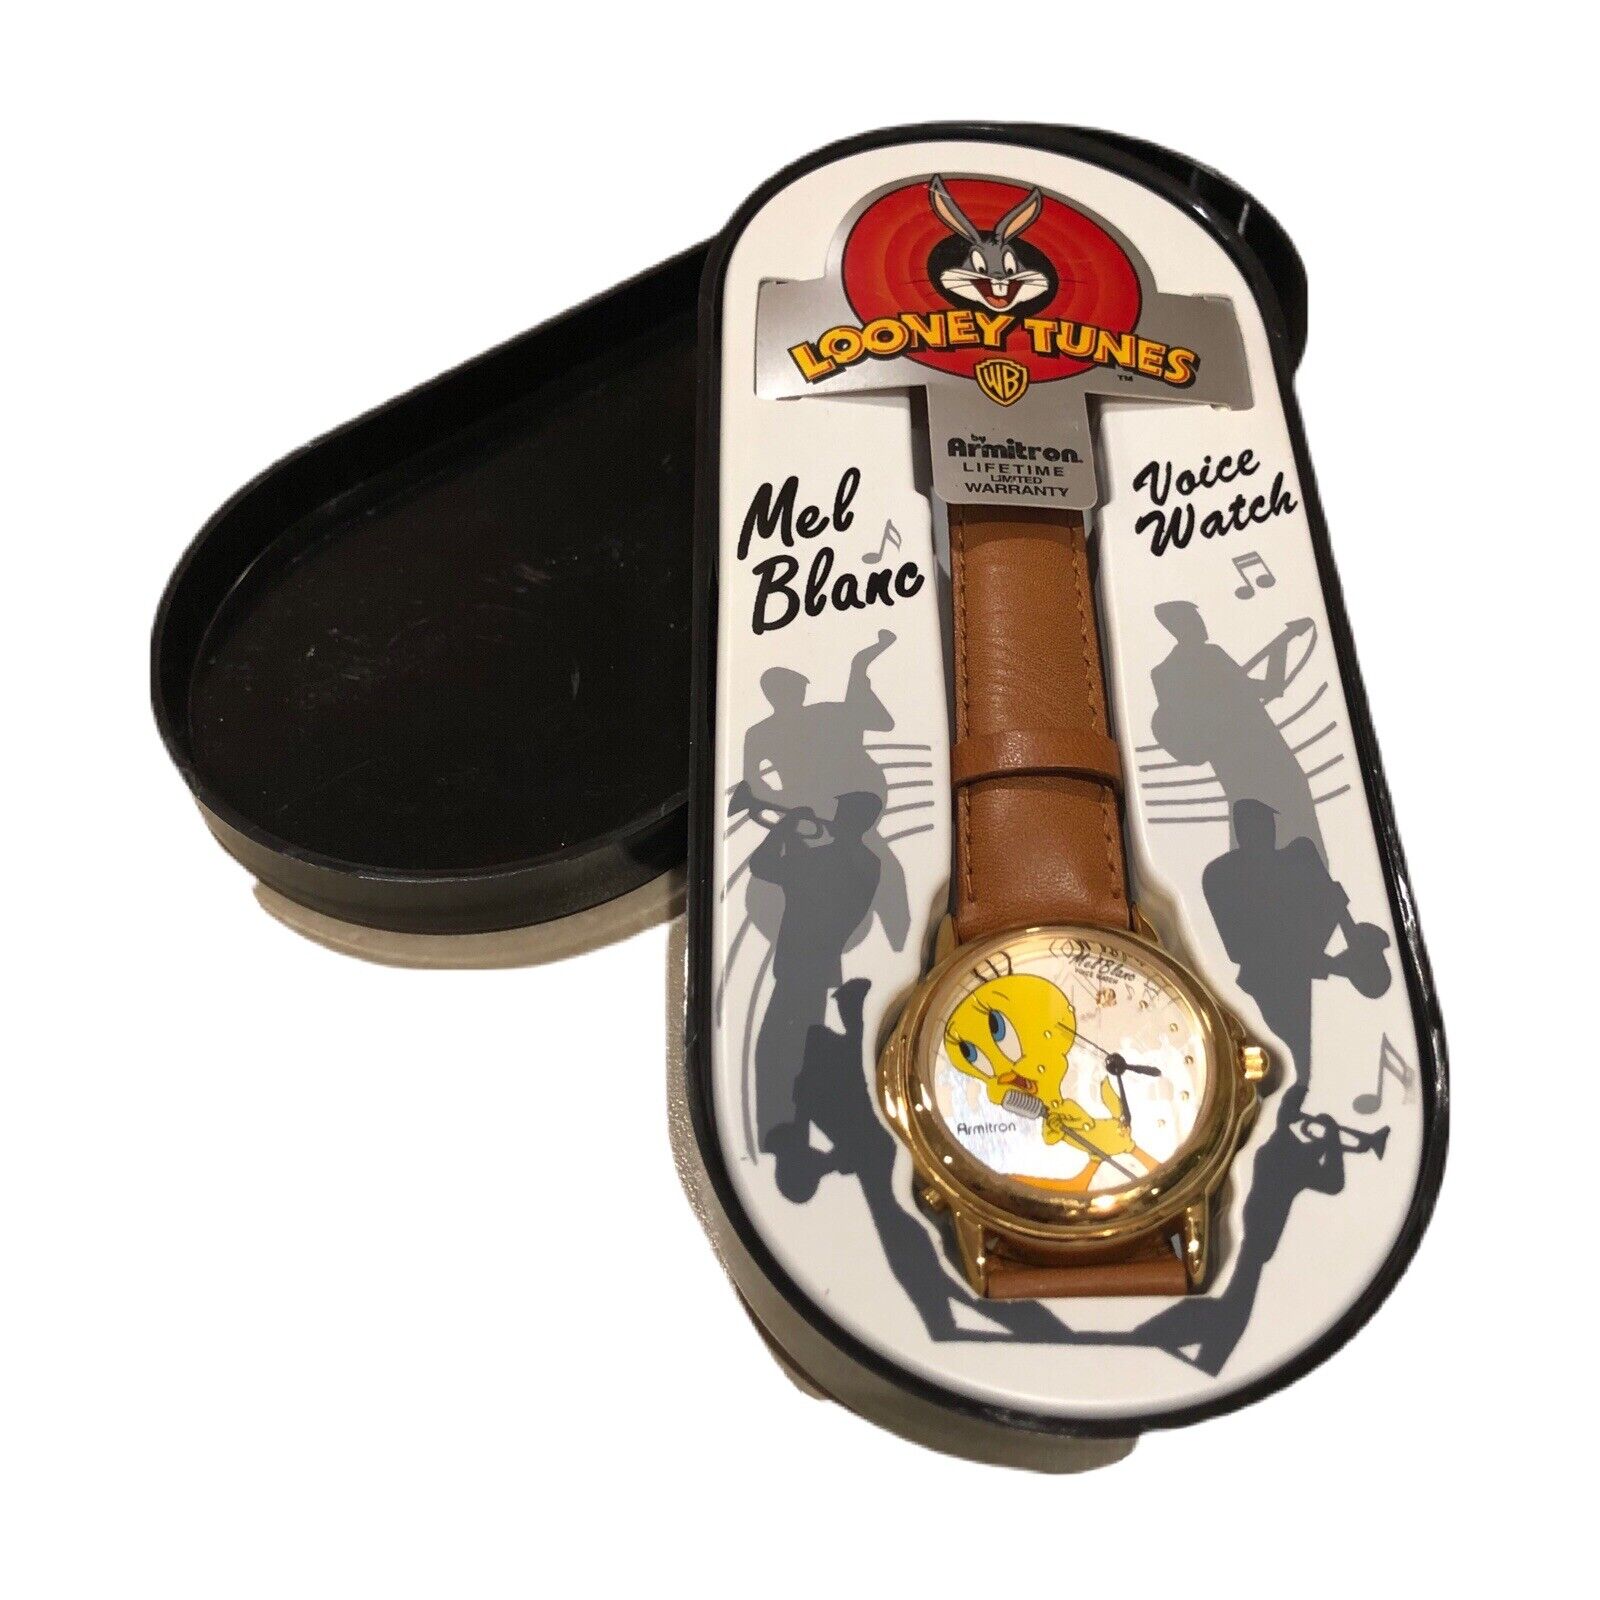 Looney Tunes Wrist Watch Mel Blanc Tweety Bird Armitron Voice Watch Untested